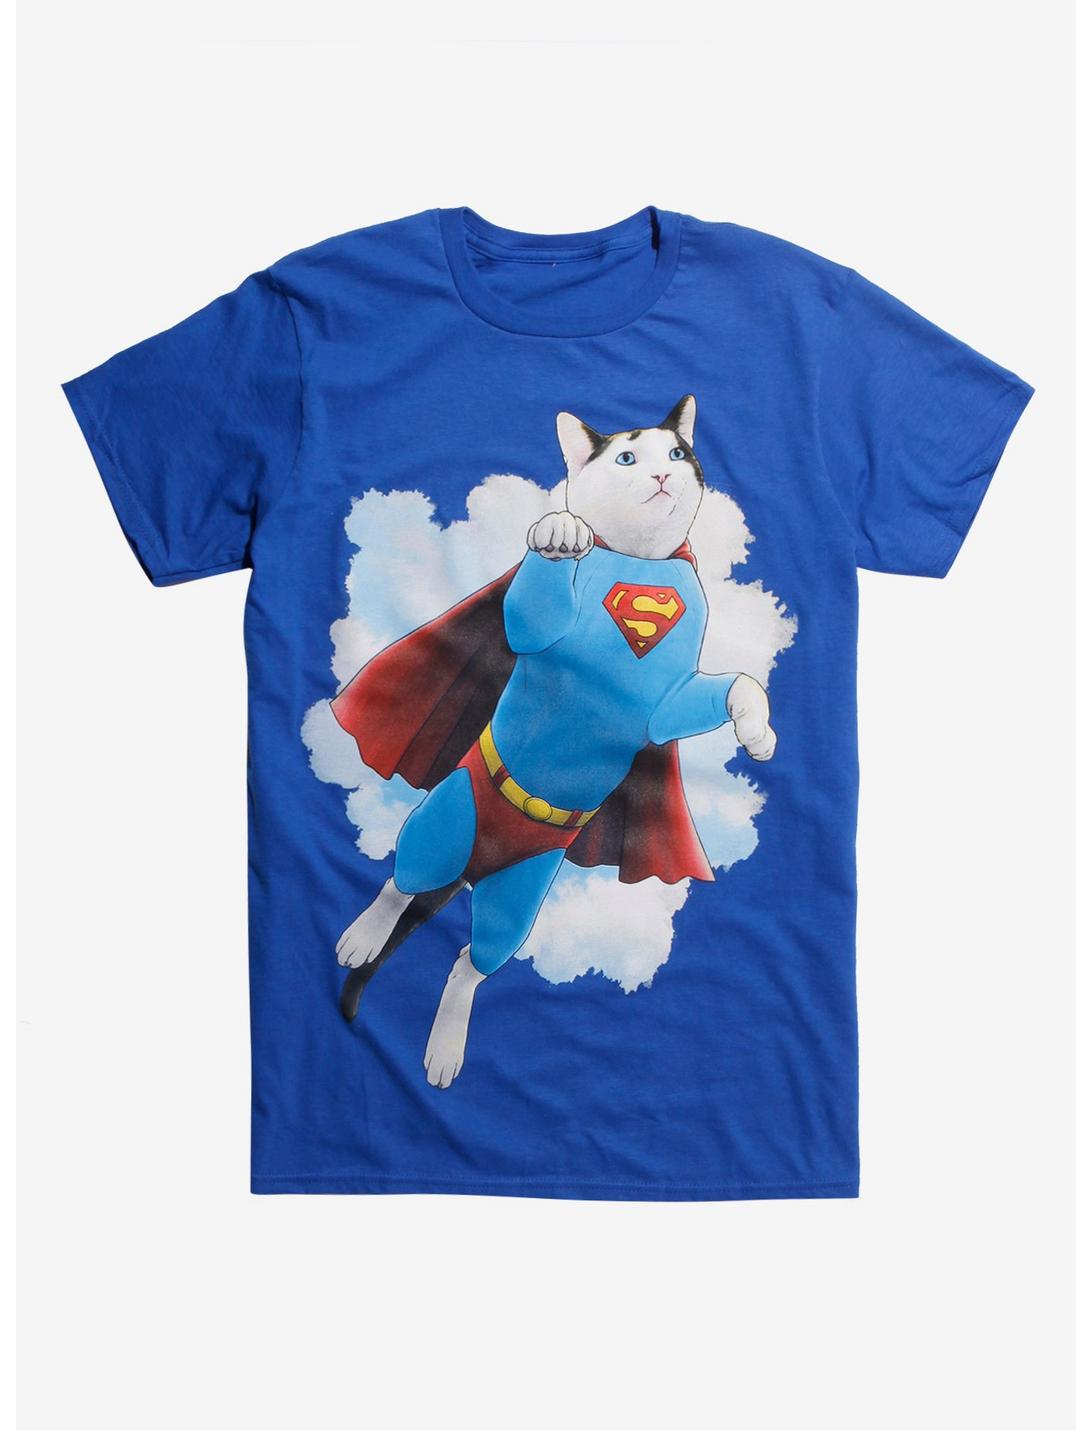 Jenny Parks Illustrations DC Comics Superman Super Cat T-Shirt Hot Topic Exclusive, BLACK, hi-res